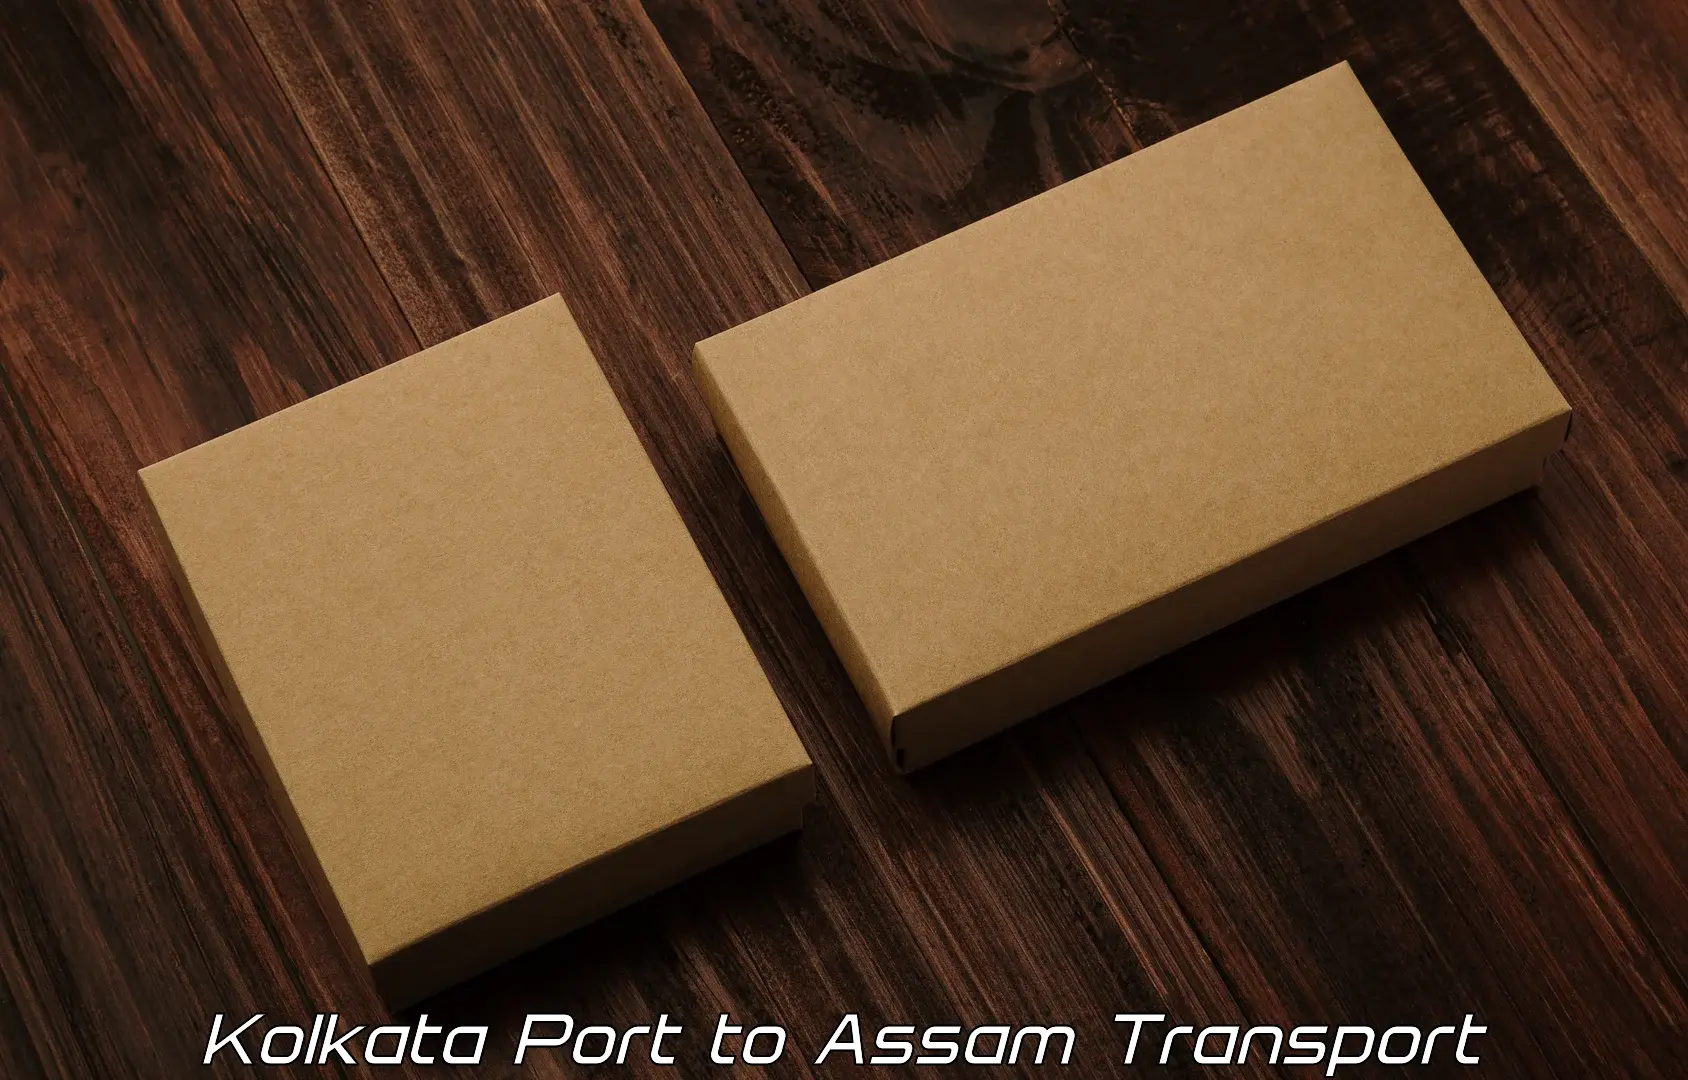 Road transport online services Kolkata Port to Kabuganj